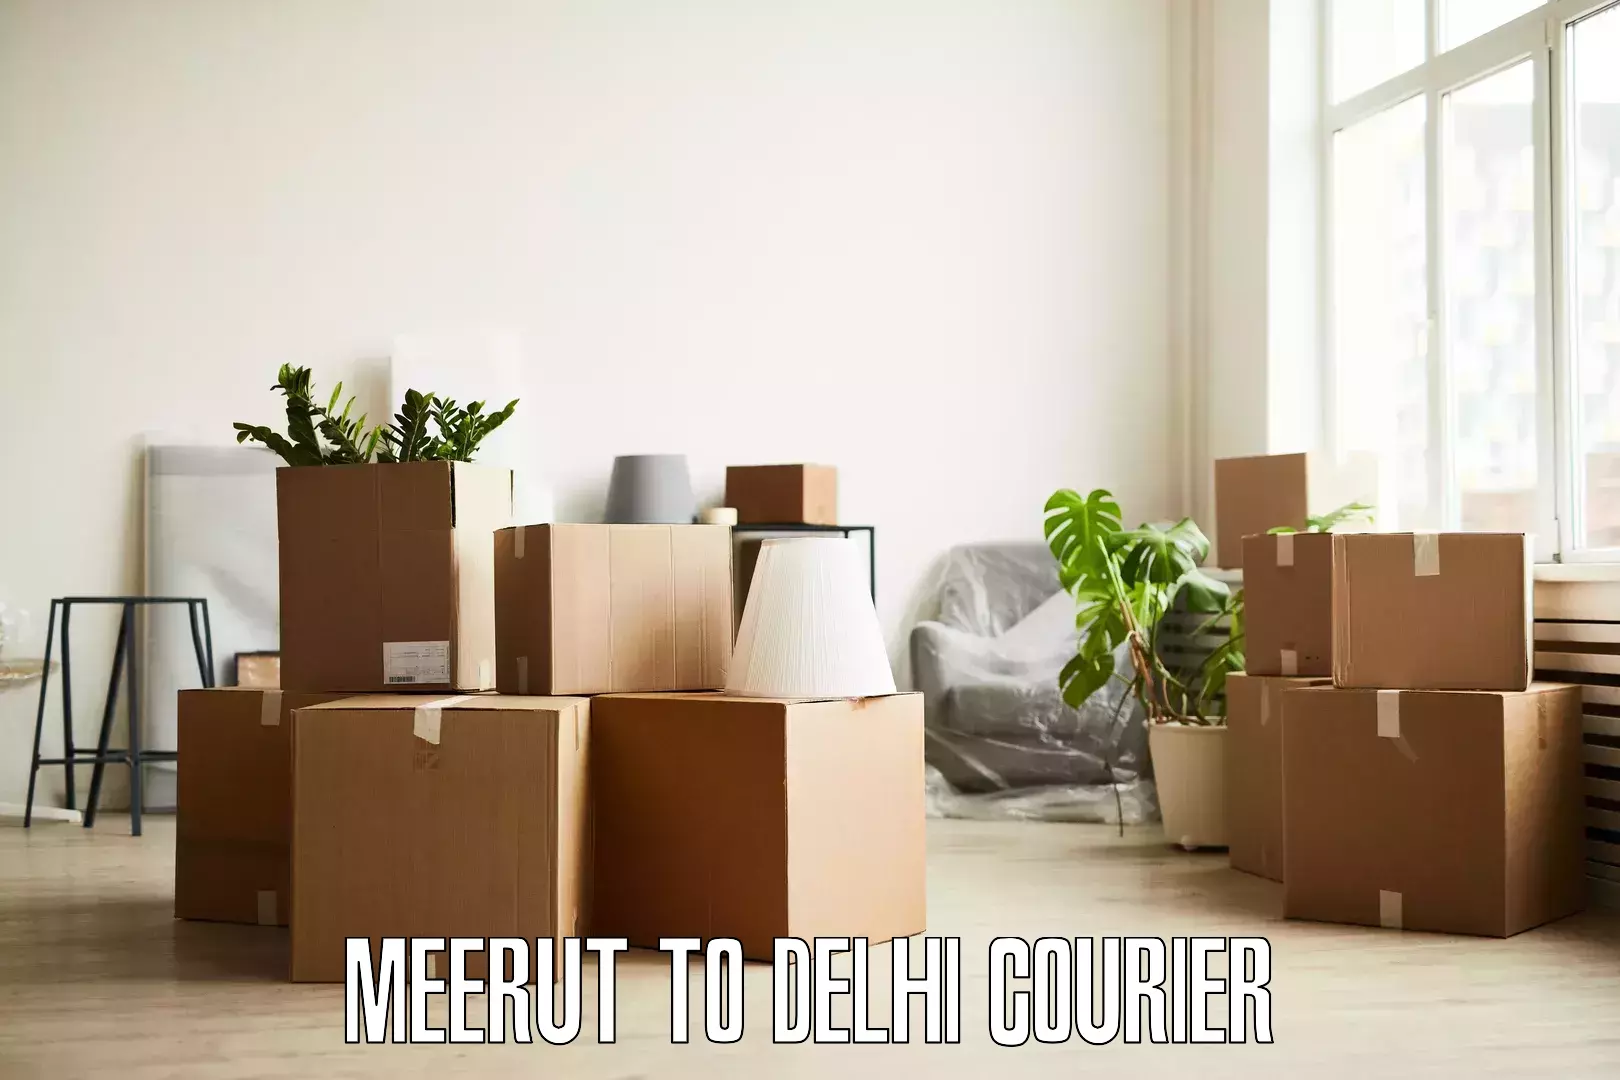 Trusted moving company Meerut to Kalkaji